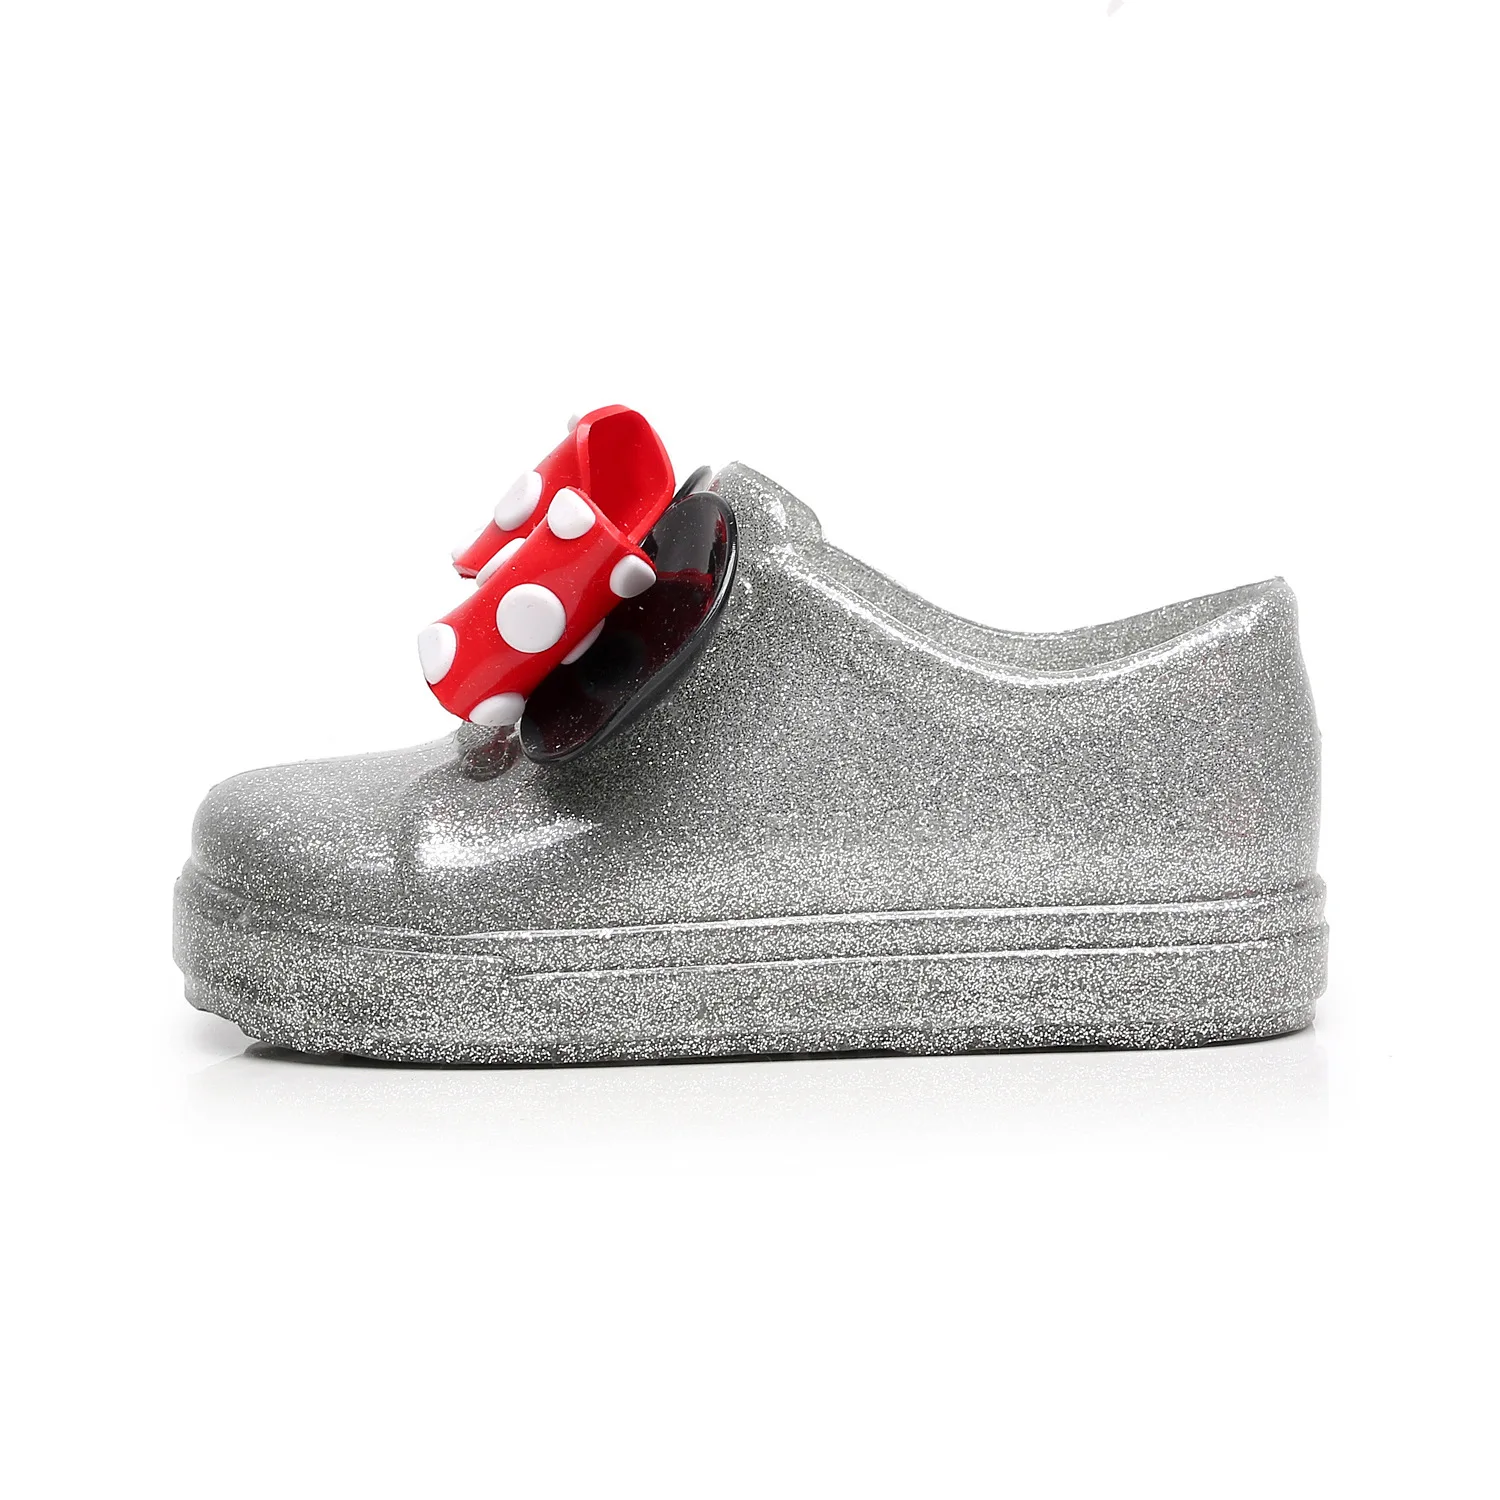 Обувь для детей сандалии для девочек прозрачная обувь осень детская мягкая комфорт дождь Обувь дети Сандалии для девочек Карамельный цвет